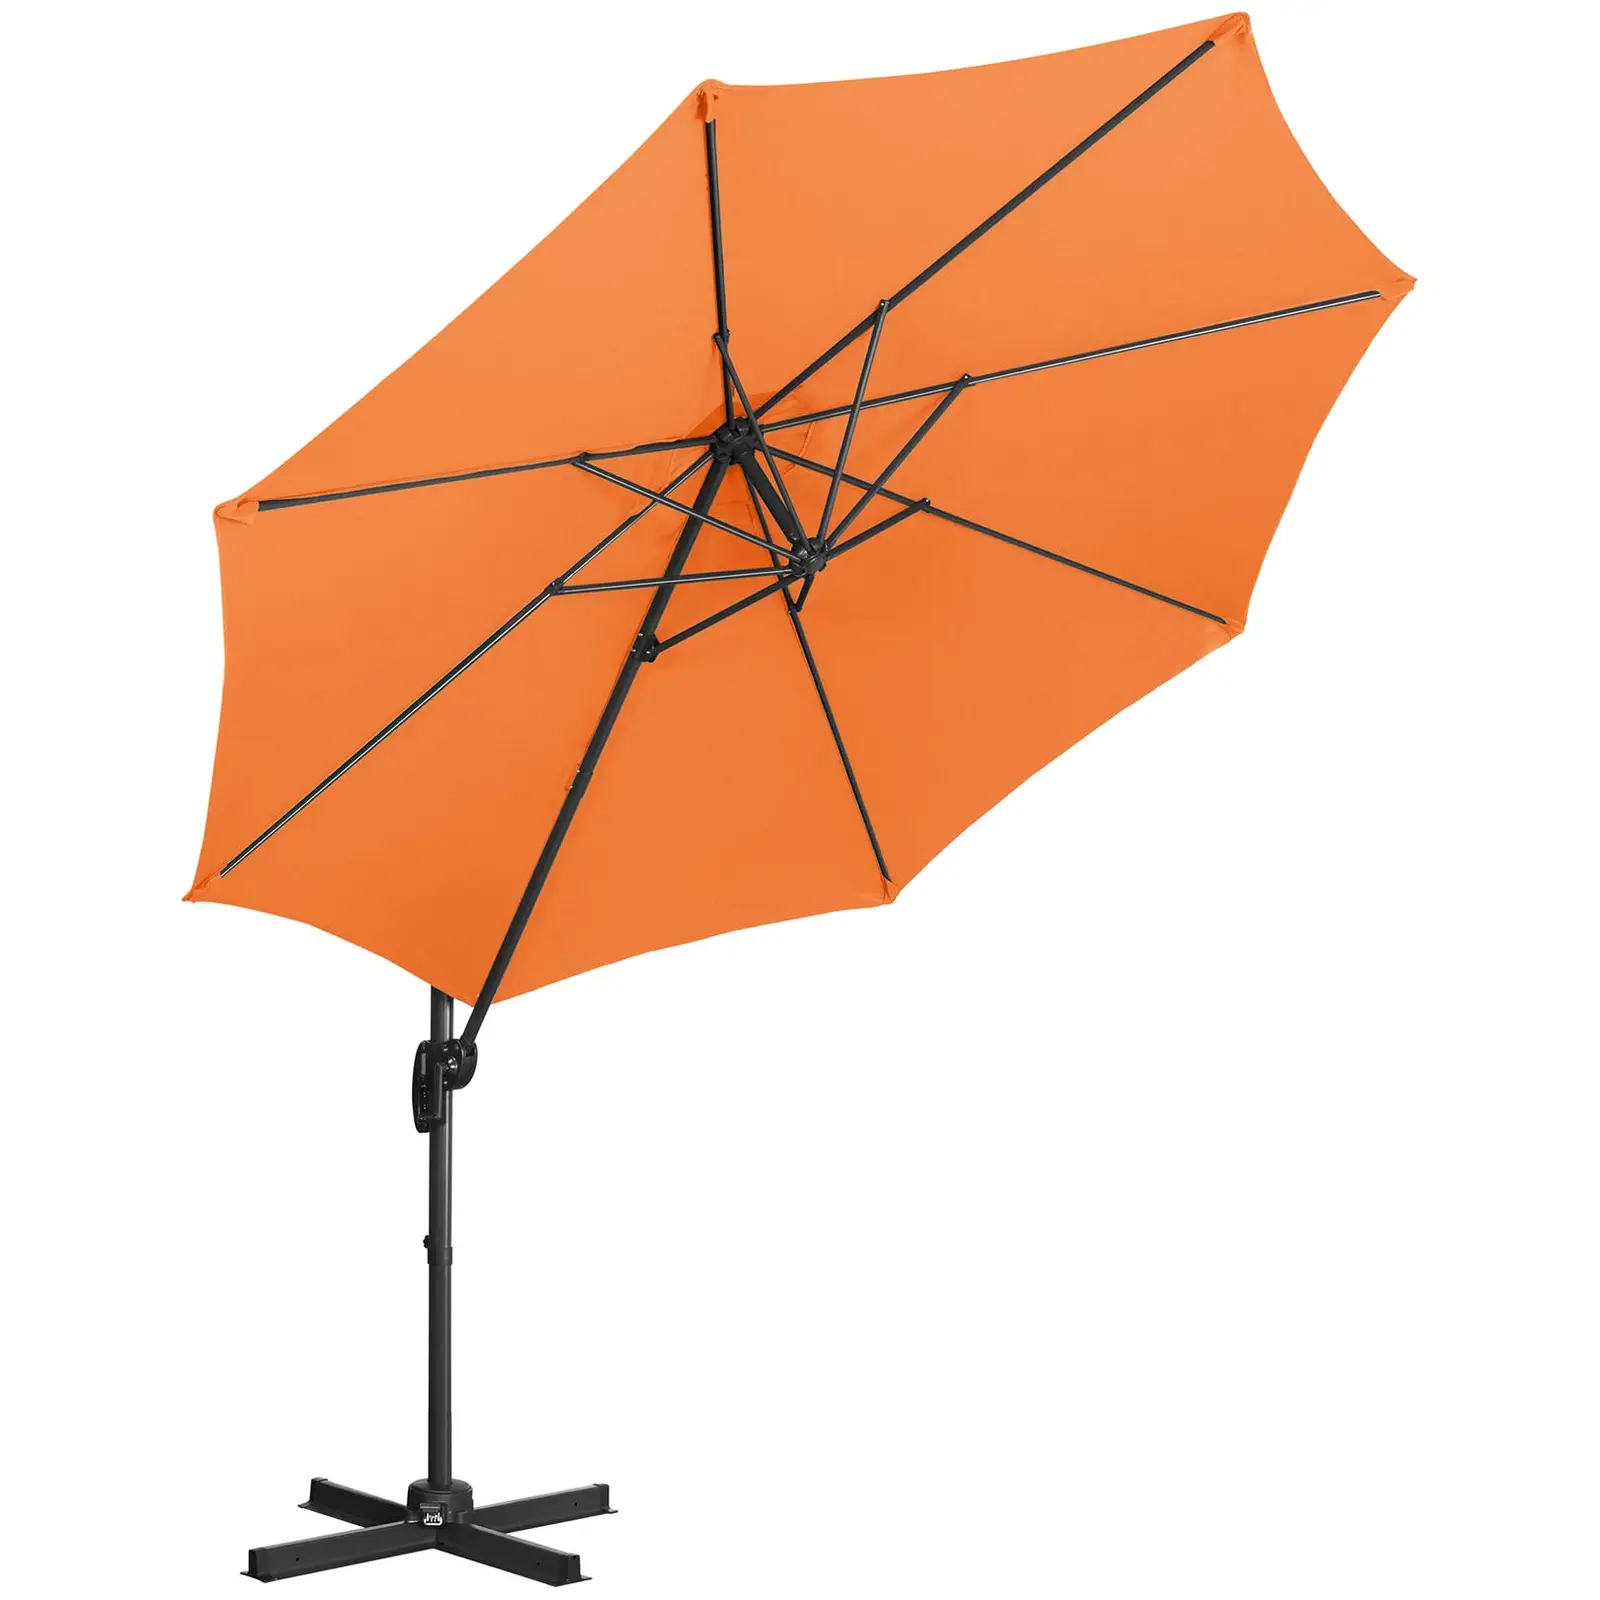 Ampelschirm - Orange - rund - Ø 300 cm - neig- und drehbar - 4